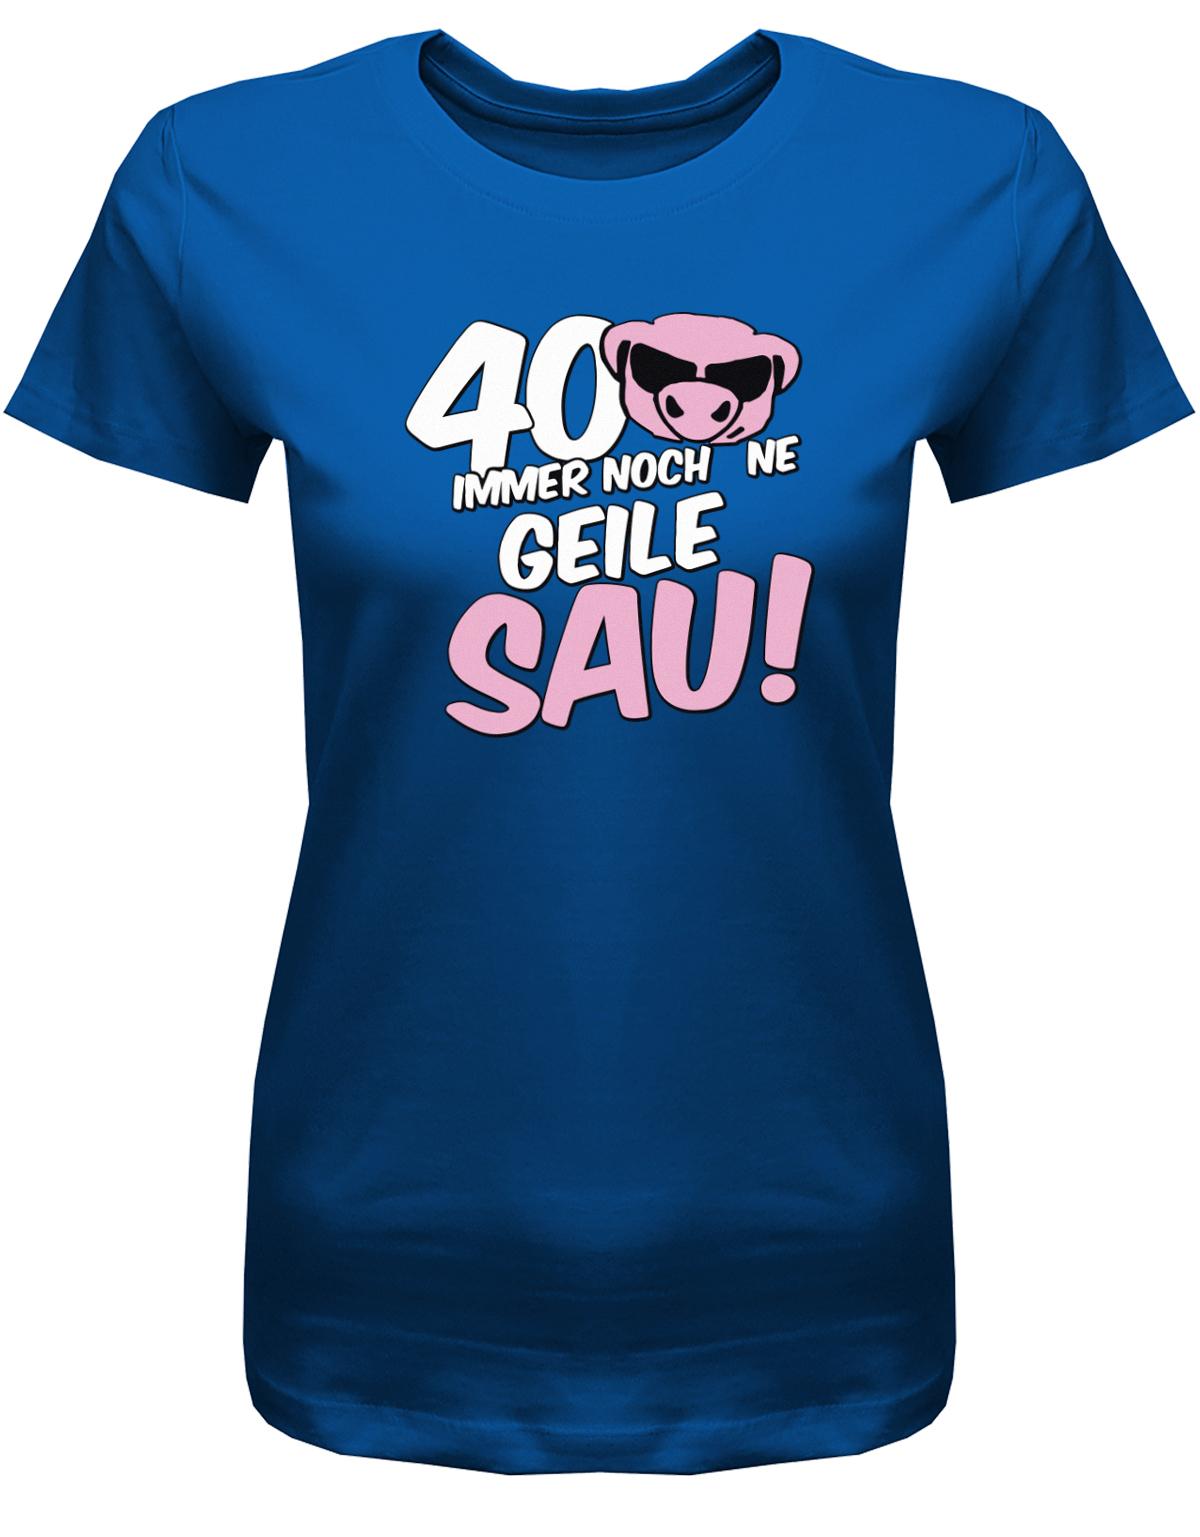 Lustiges T-Shirt zum 40 Geburtstag für die Frau Bedruckt mit 40 Immer noch 'ne geile Sau! Sau mit Sonnenbrille Royalblau